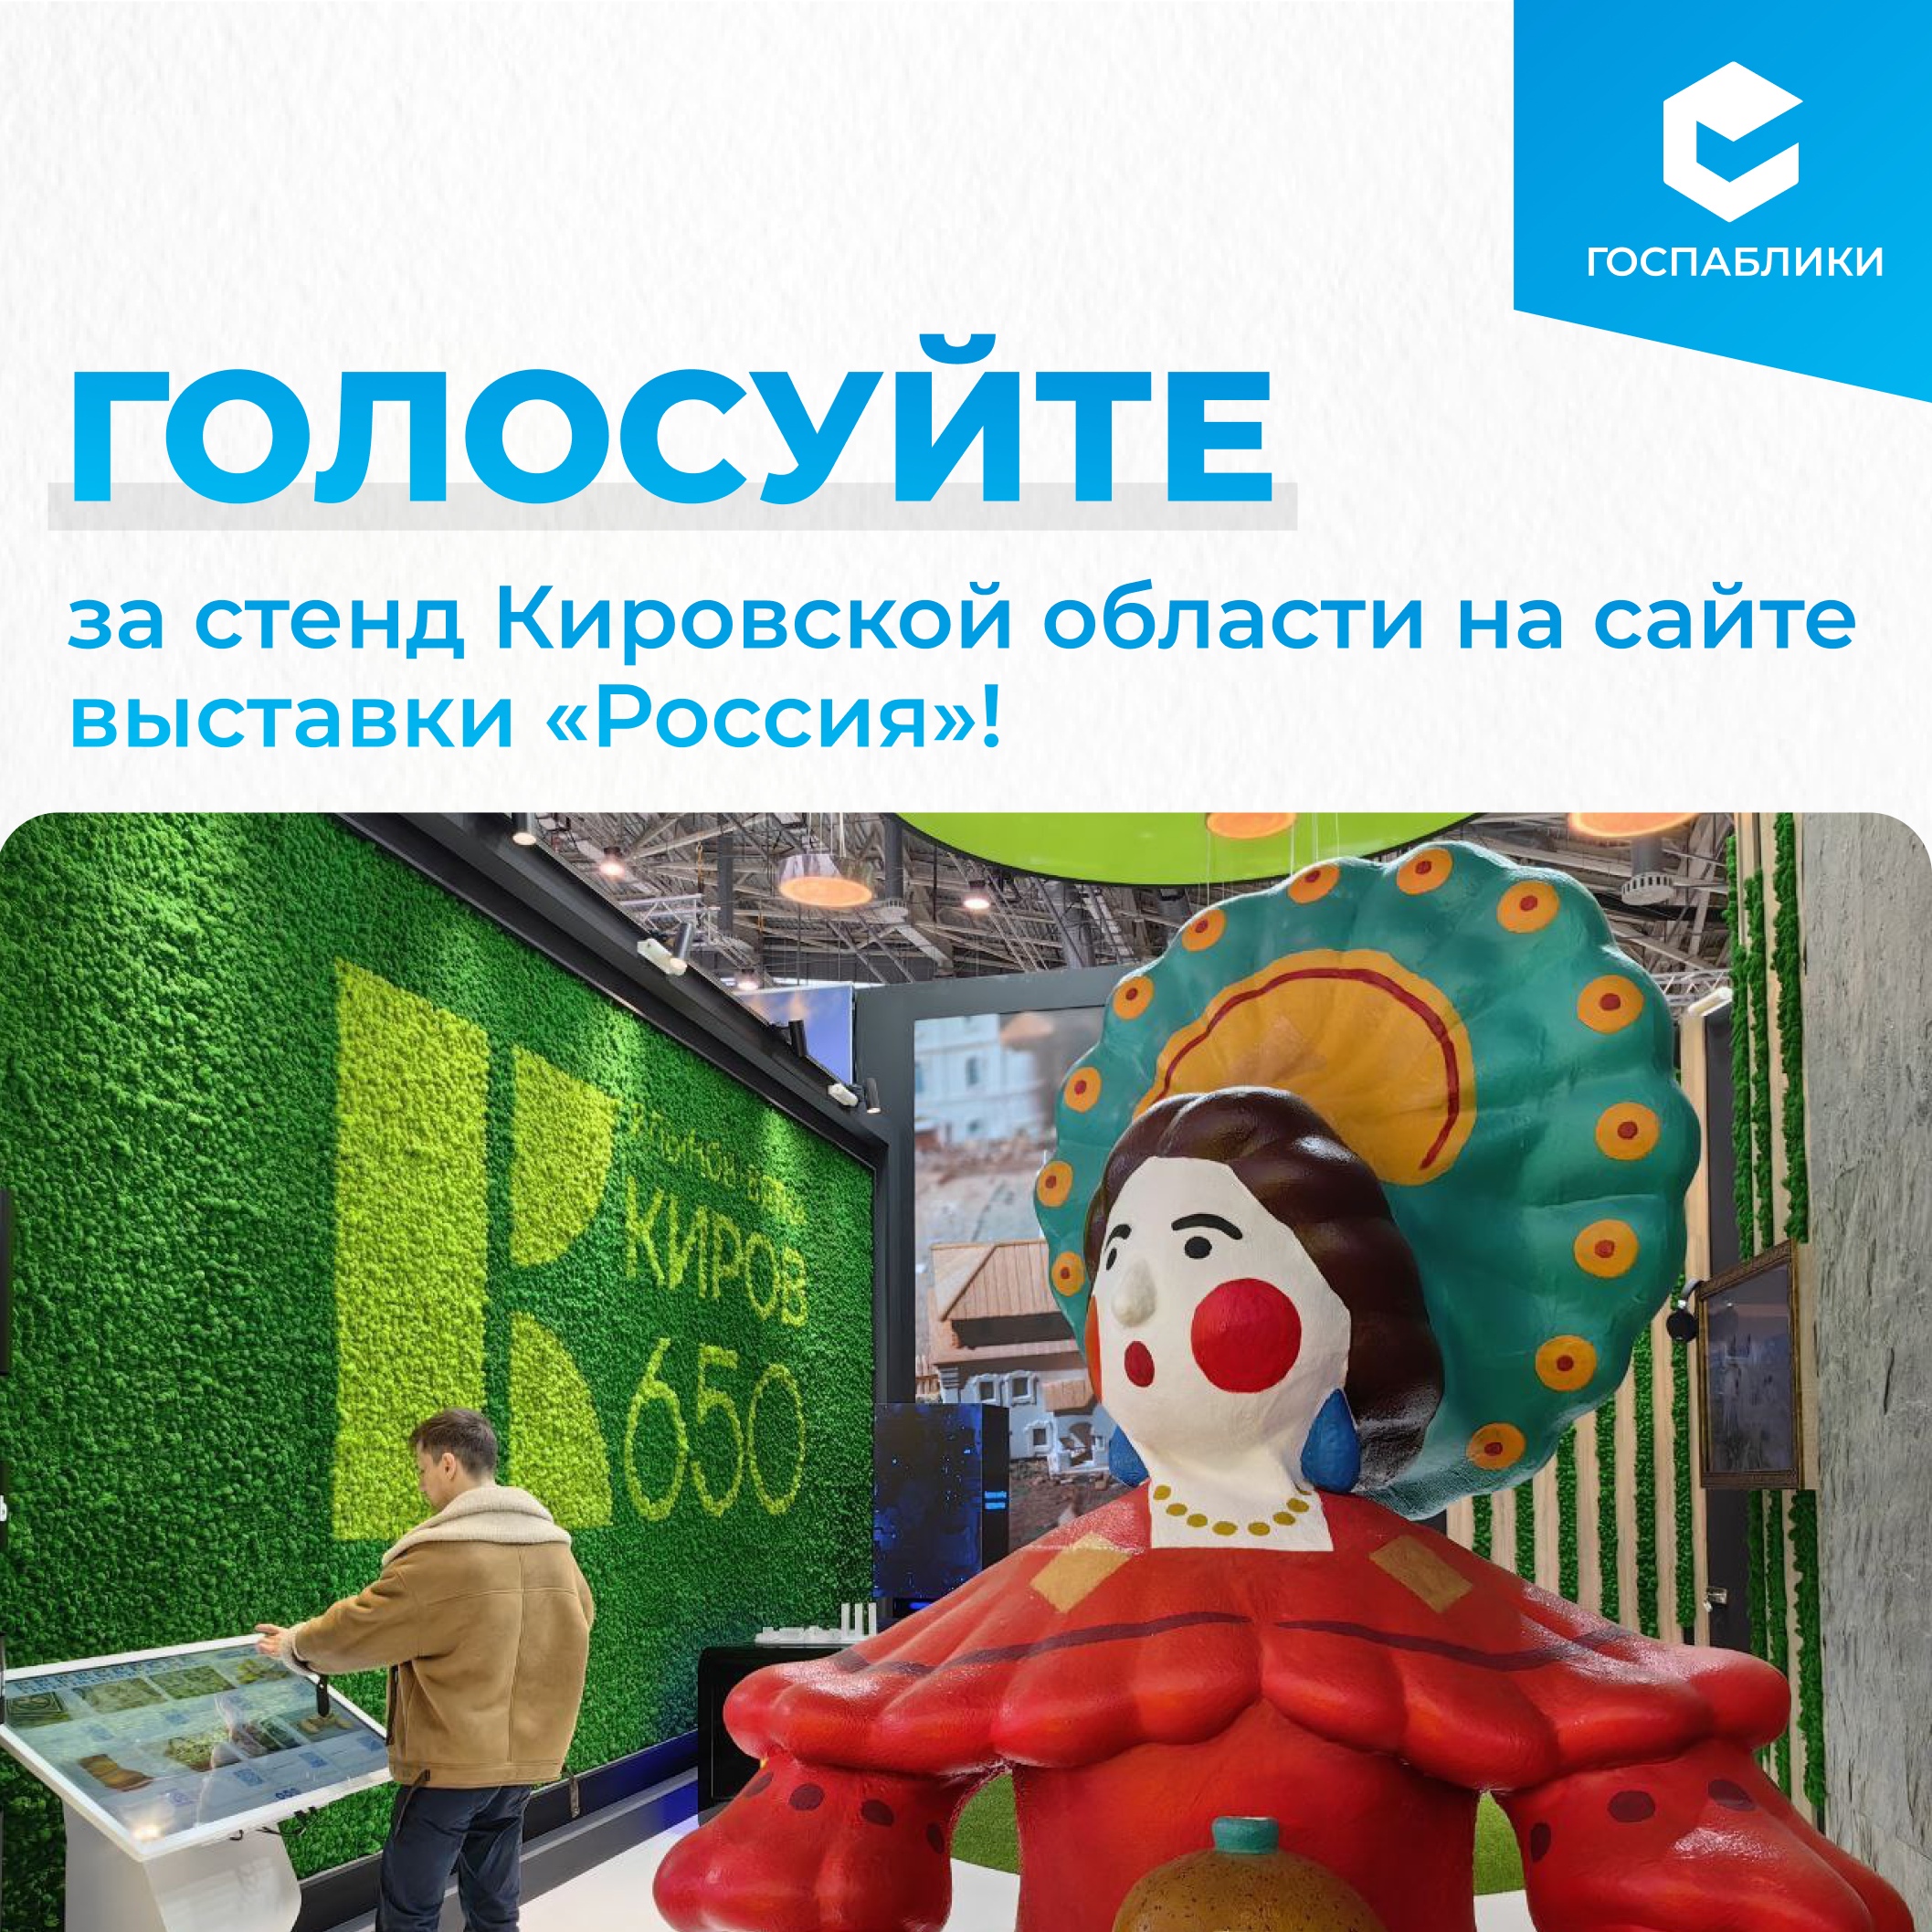 На сайте выставки-форума «Россия» началось голосование за лучший стенд.